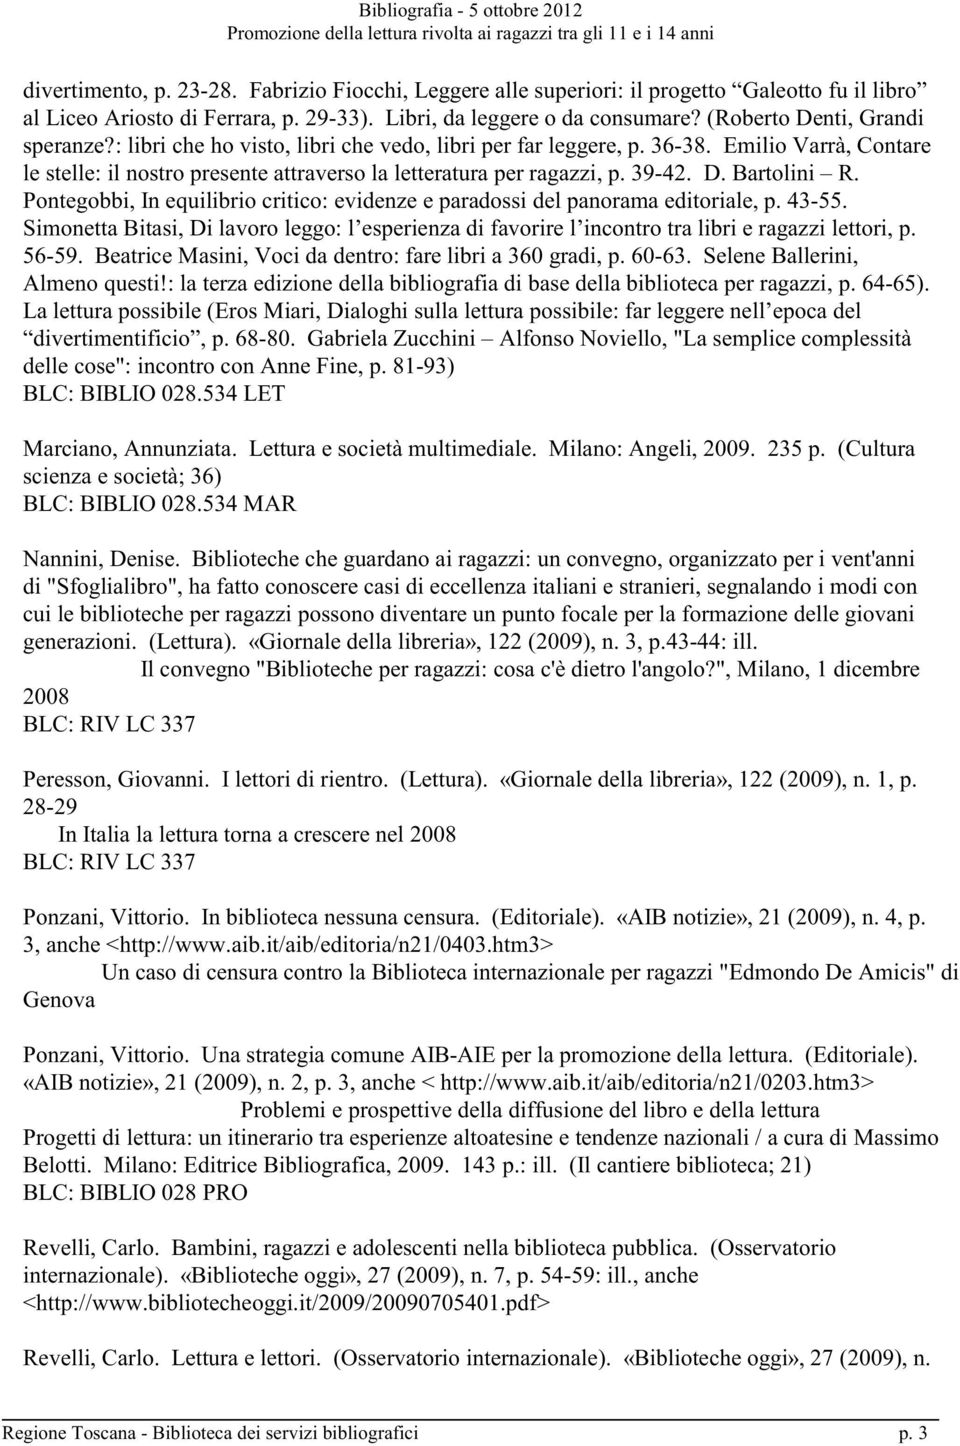 39-42. D. Bartolini R. Pontegobbi, In equilibrio critico: evidenze e paradossi del panorama editoriale, p. 43-55.